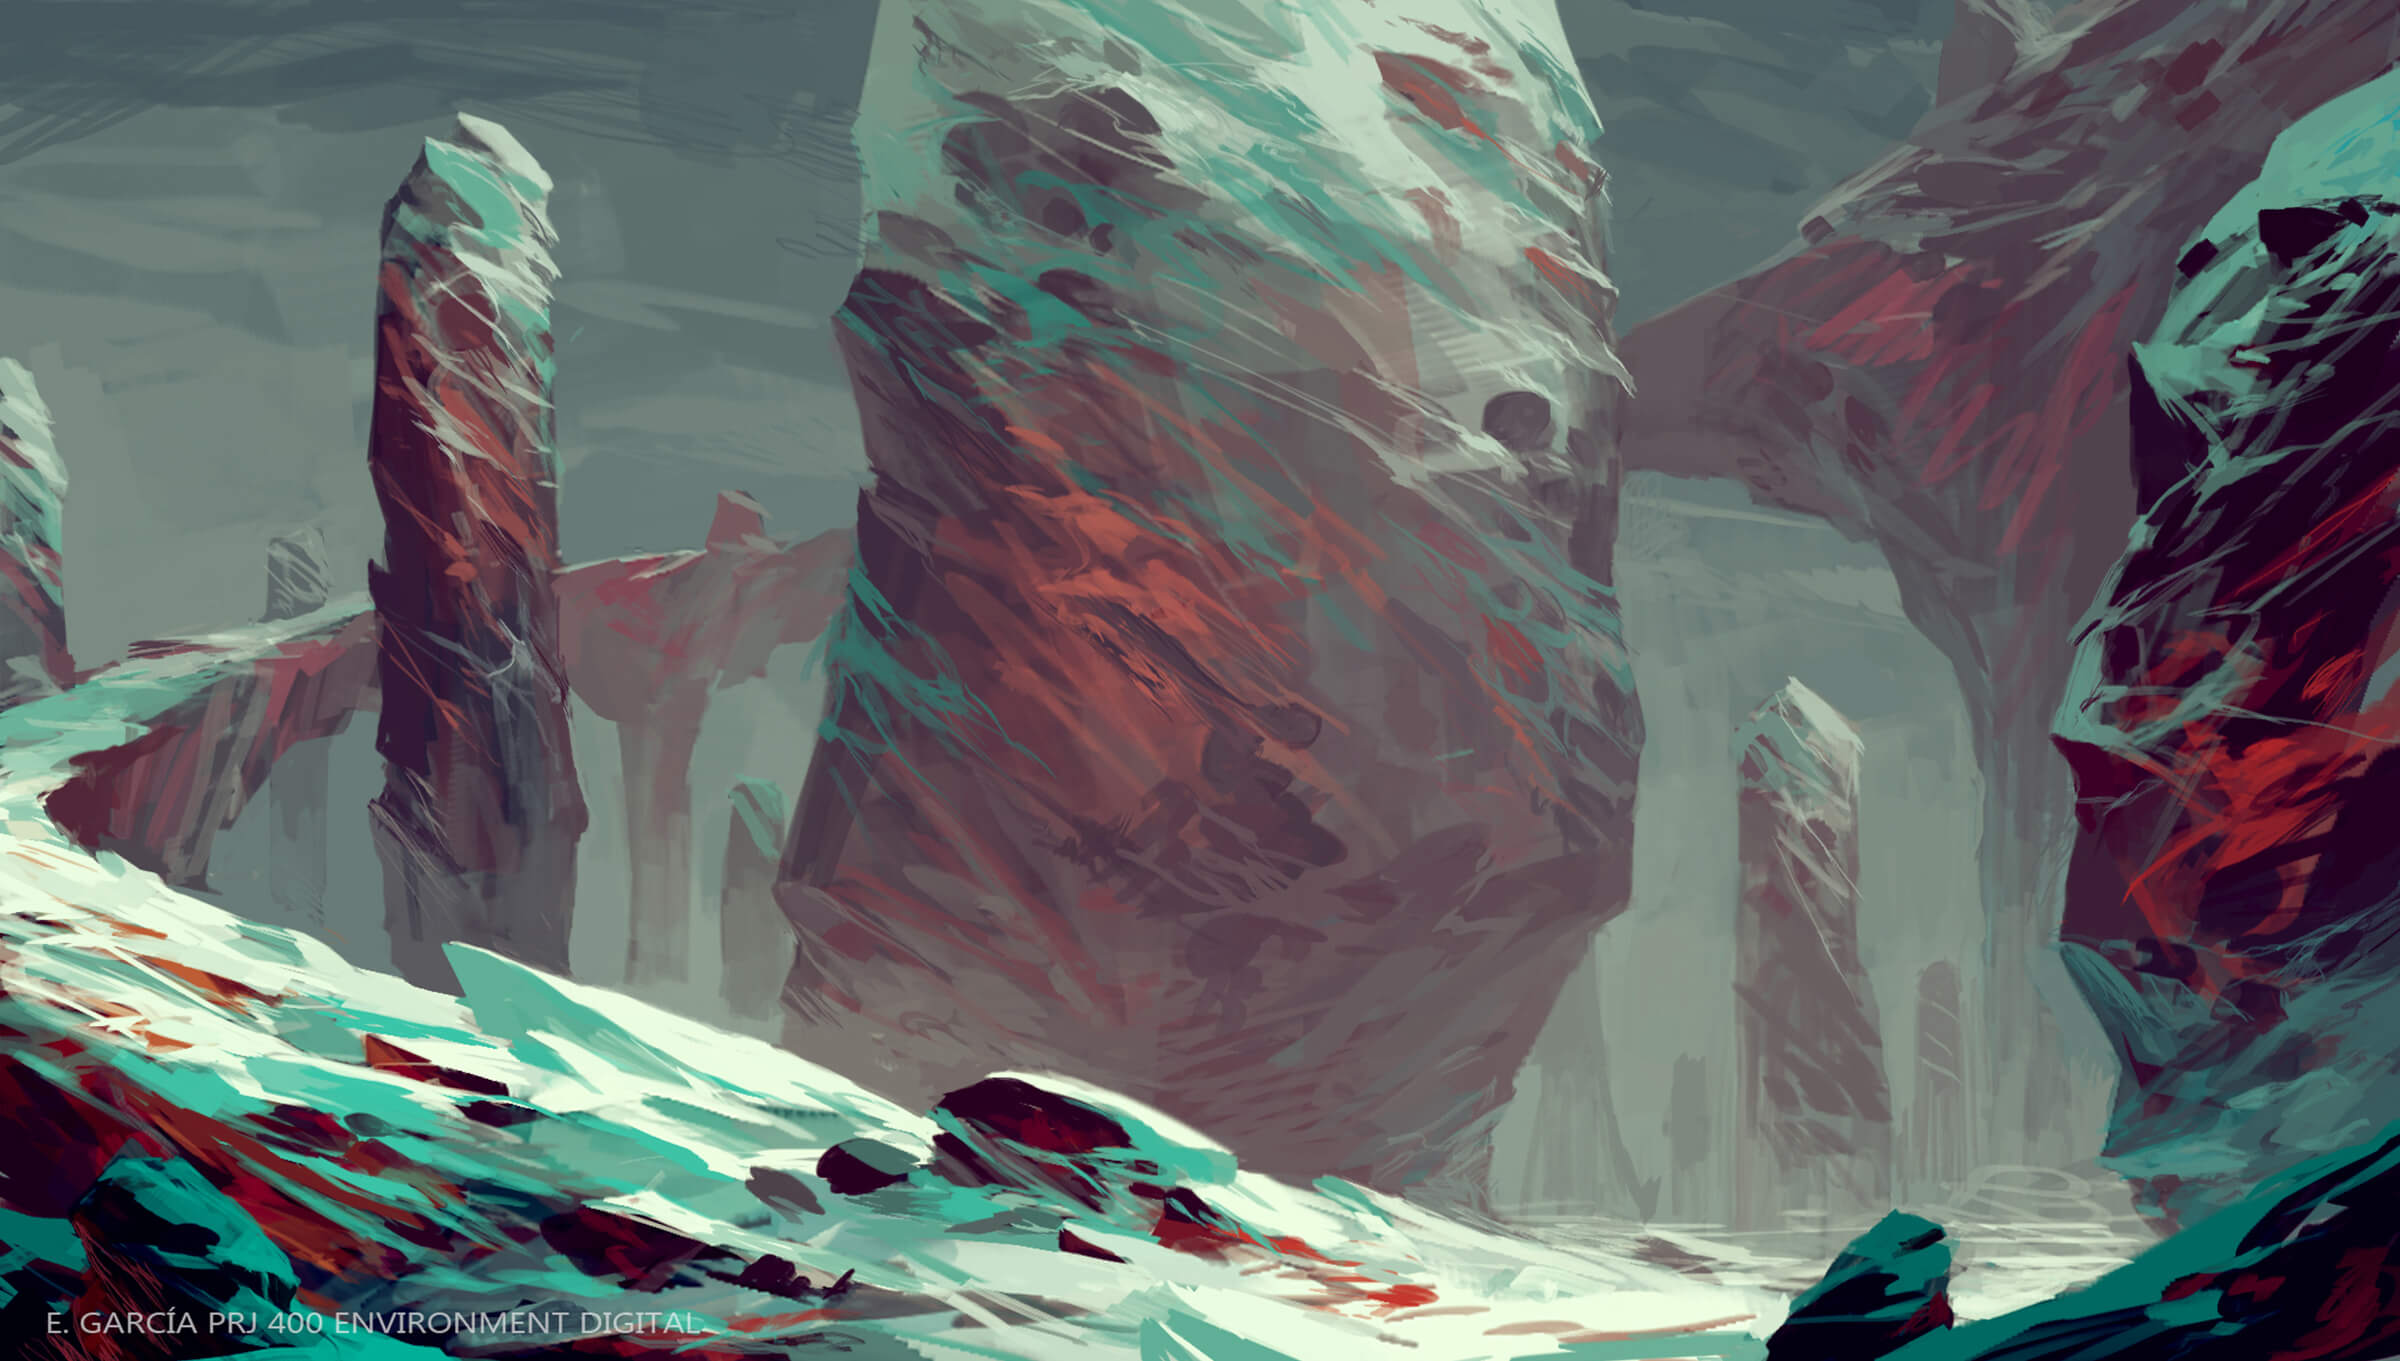 Un entorno rocoso con afloramientos cubiertos de nieve donde predominan los tonos de color blanco, azul y rojo.